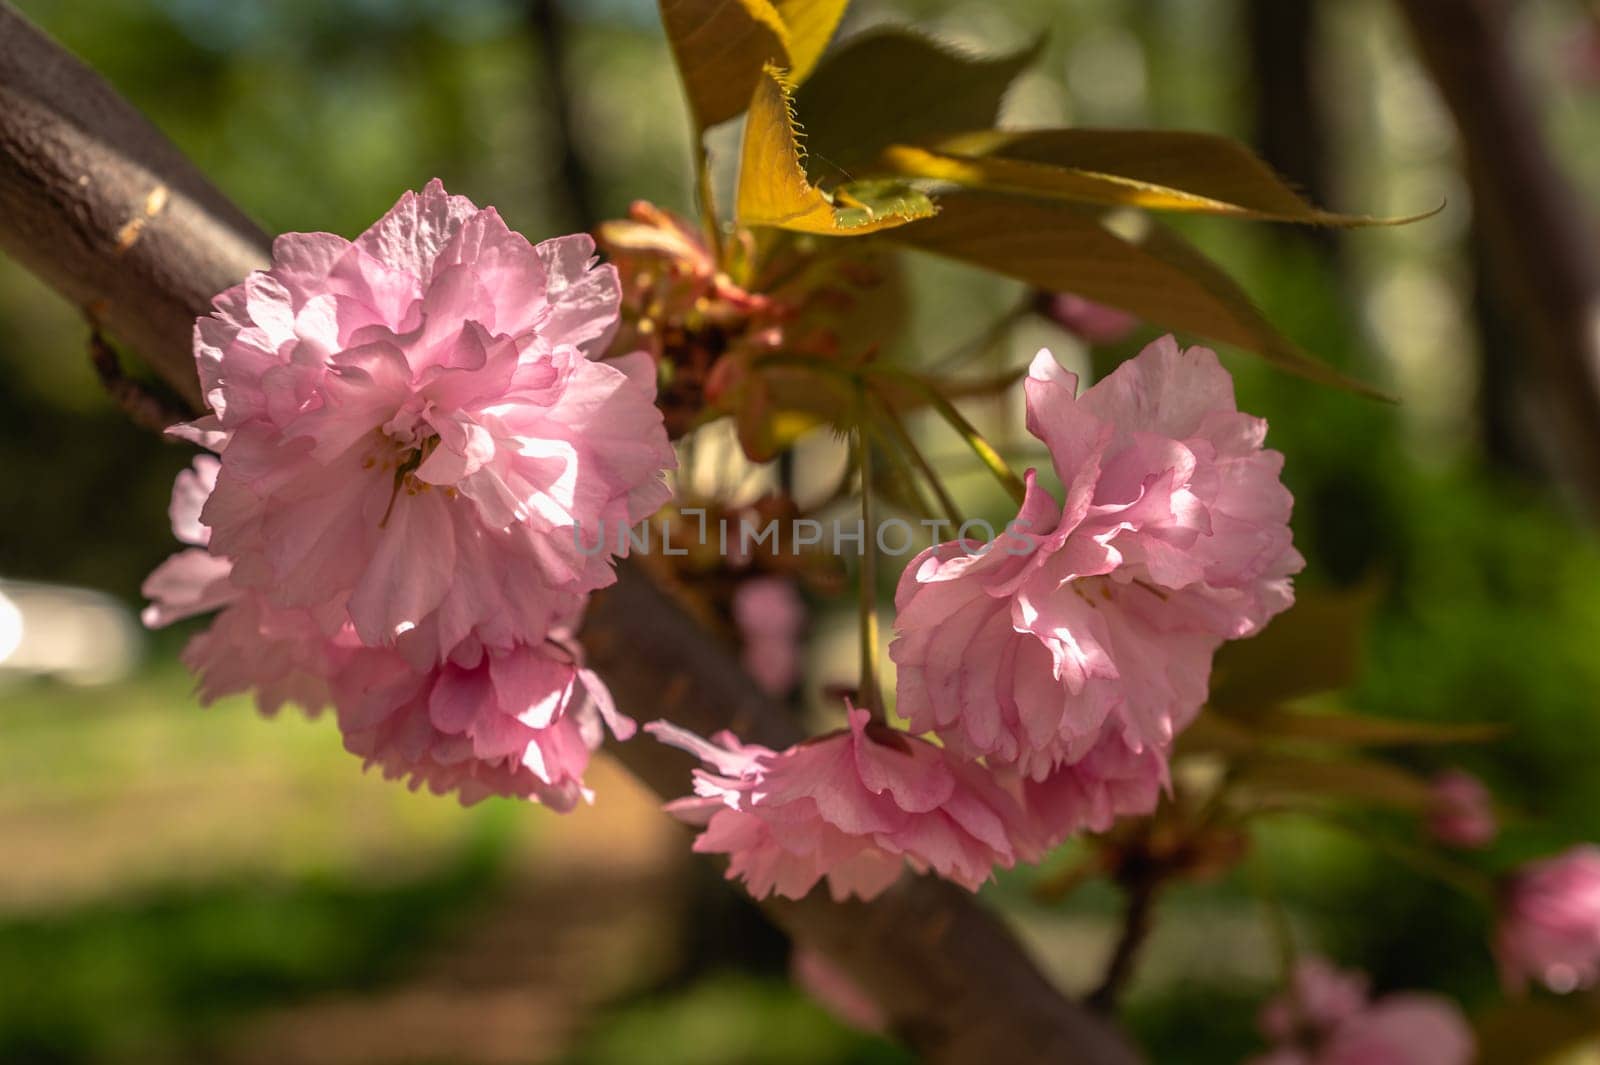 Odessa, Ukraine. Spring flowers and plants in Odessa botanical garden in Ukraine on a sunny day